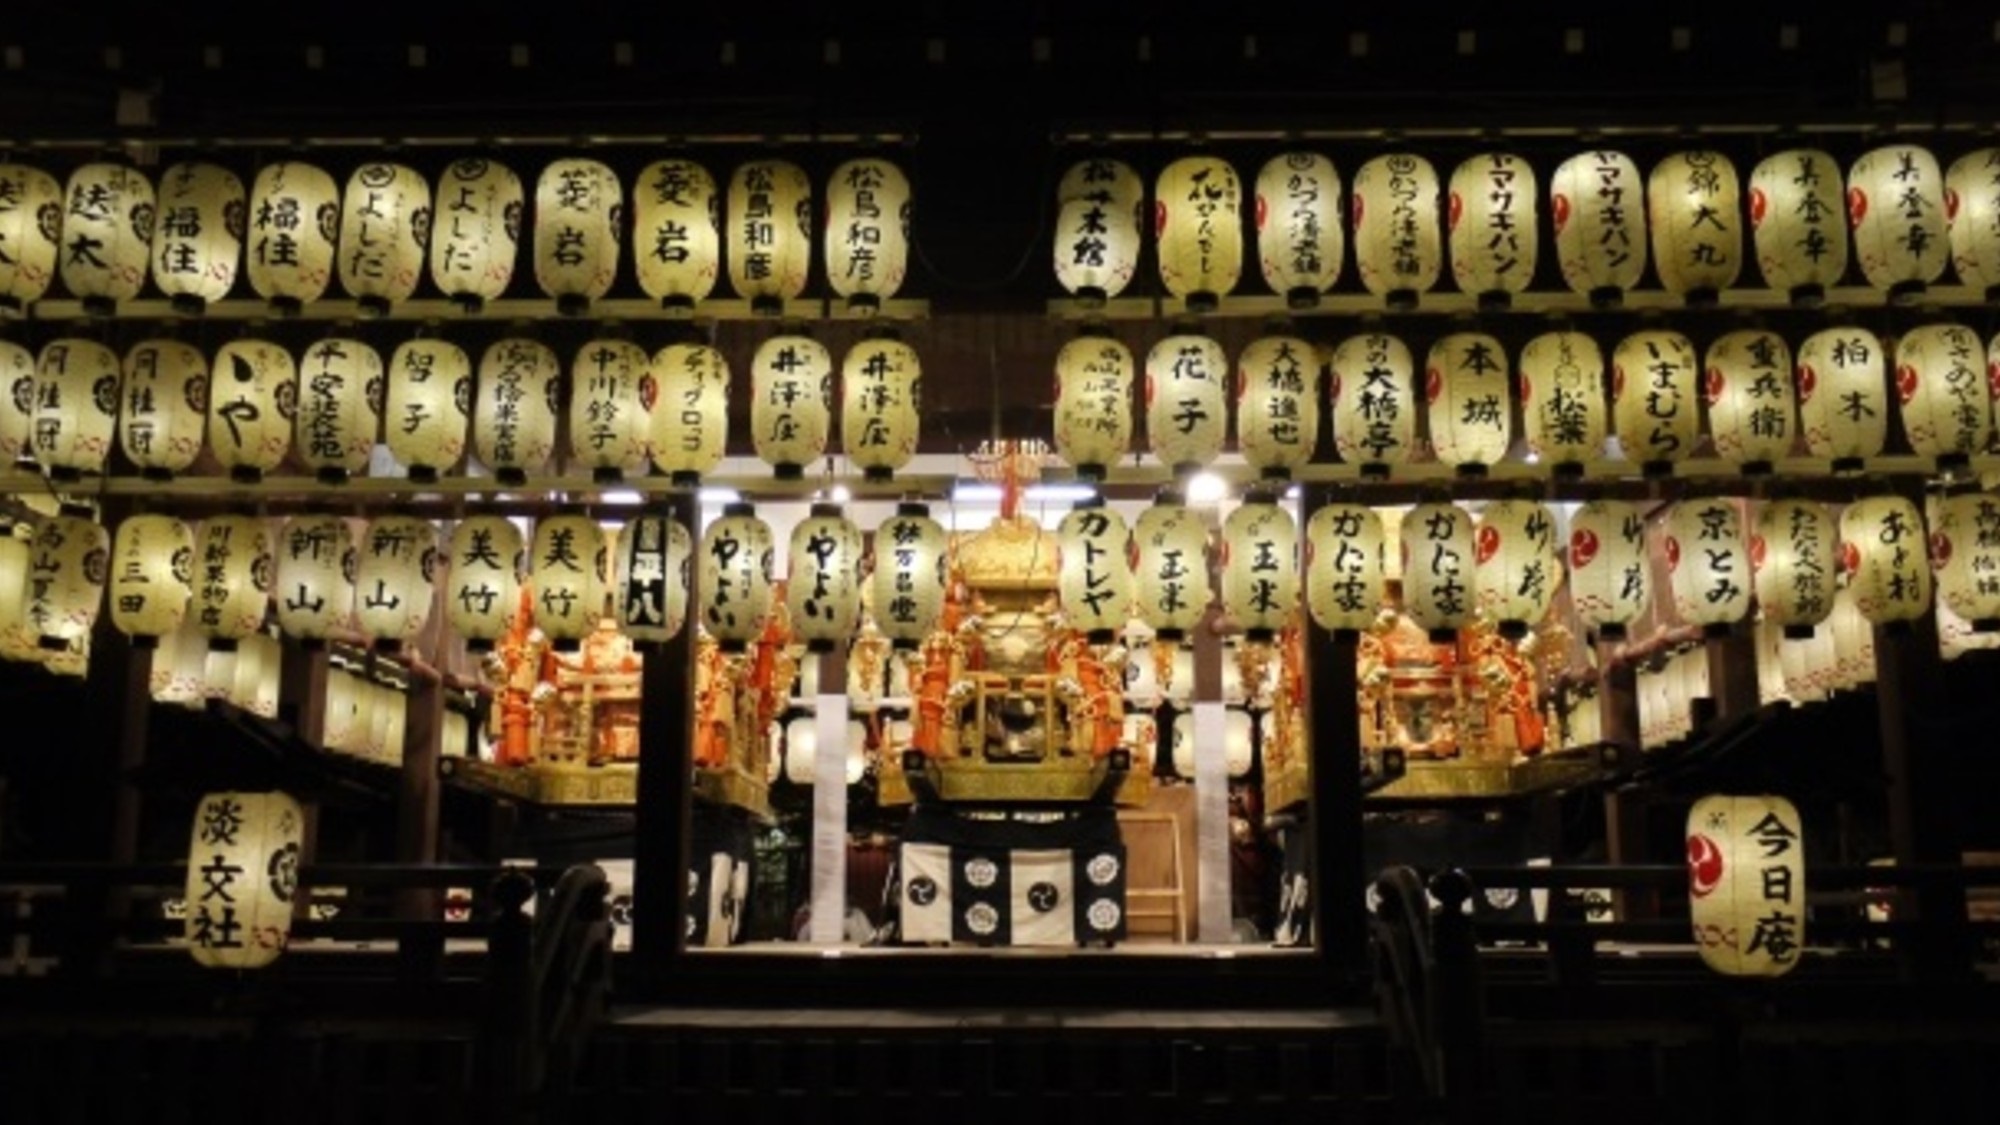 【祇園】八坂神社は7月に行われる祇園祭で有名な名所。写真の舞殿の提灯は圧巻の迫力です